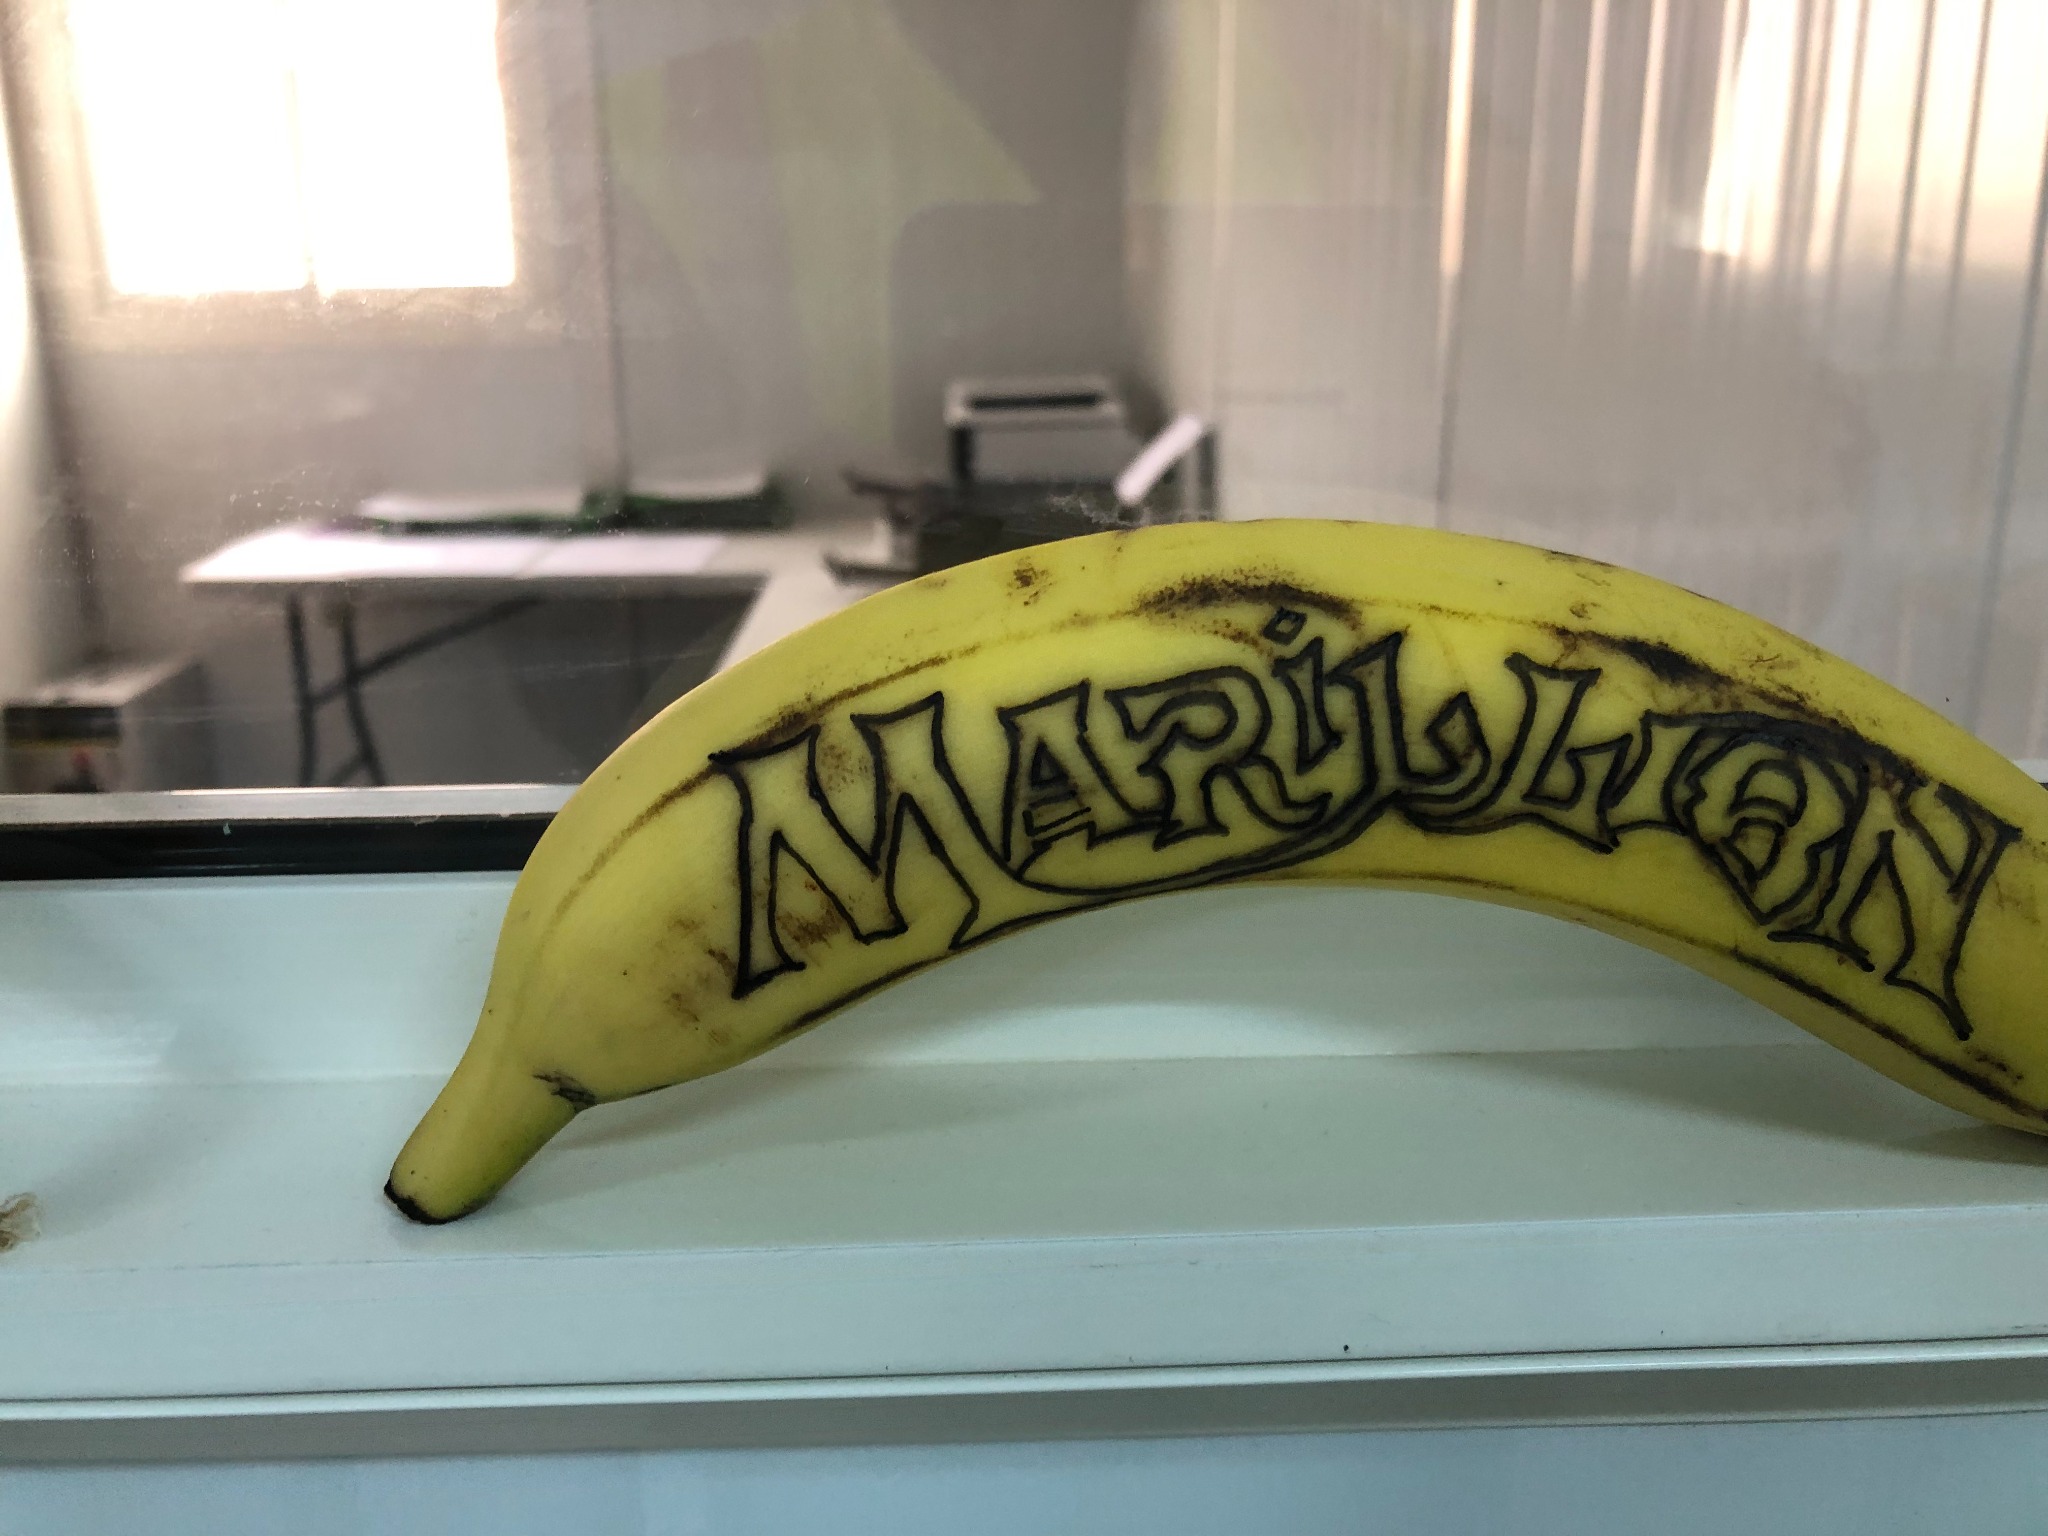 C'est ne pas une banane